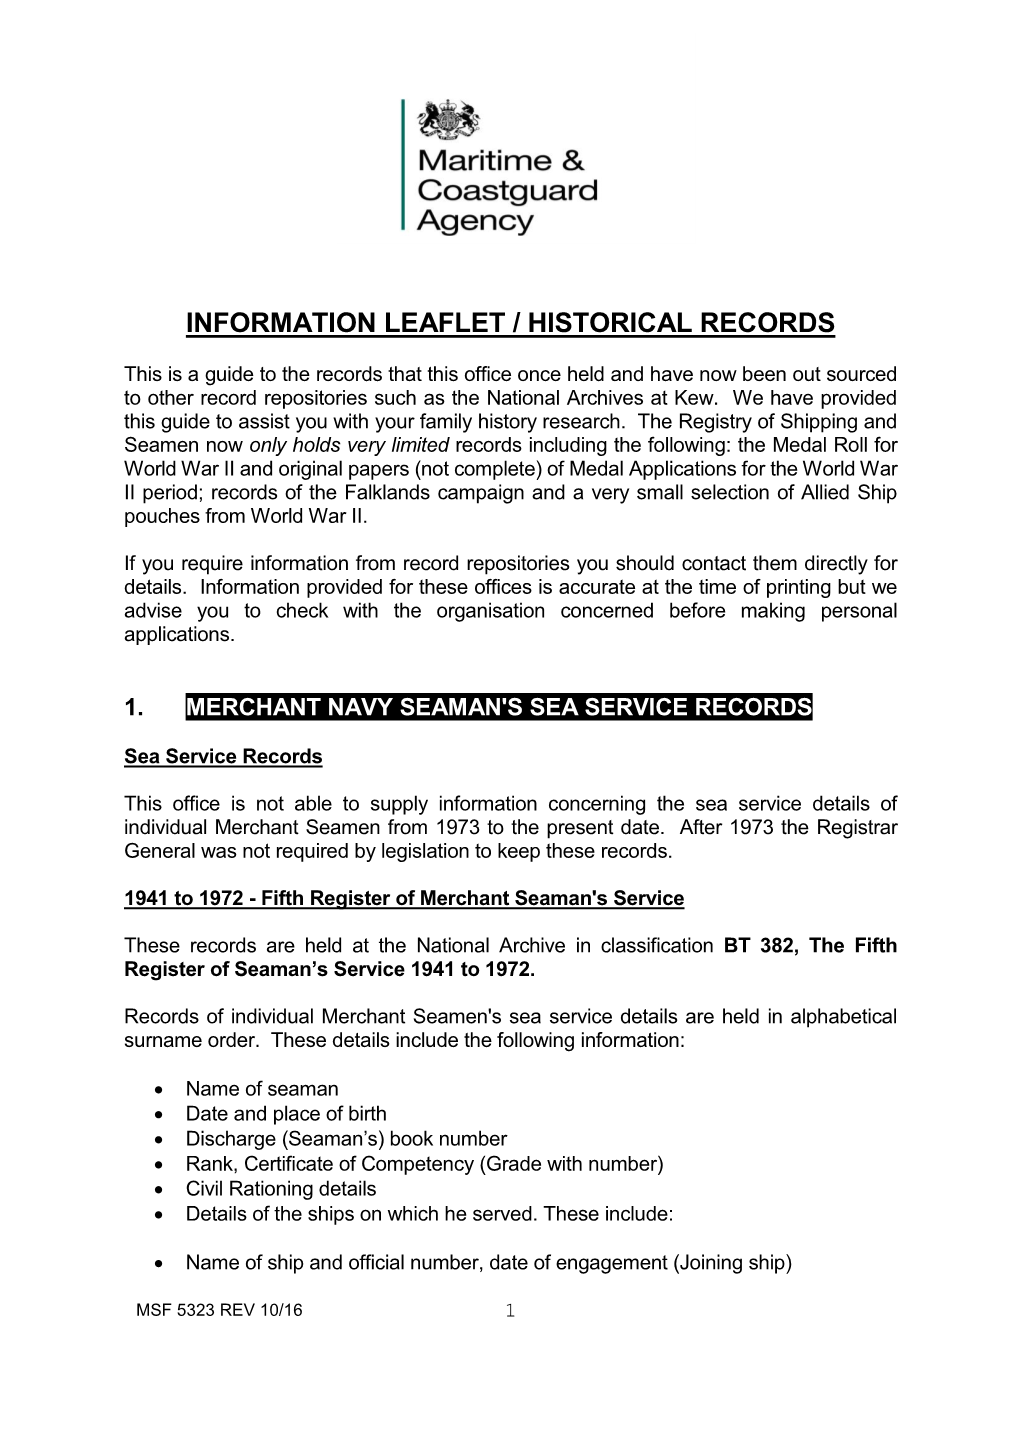 Information Leaflet / Historical Records